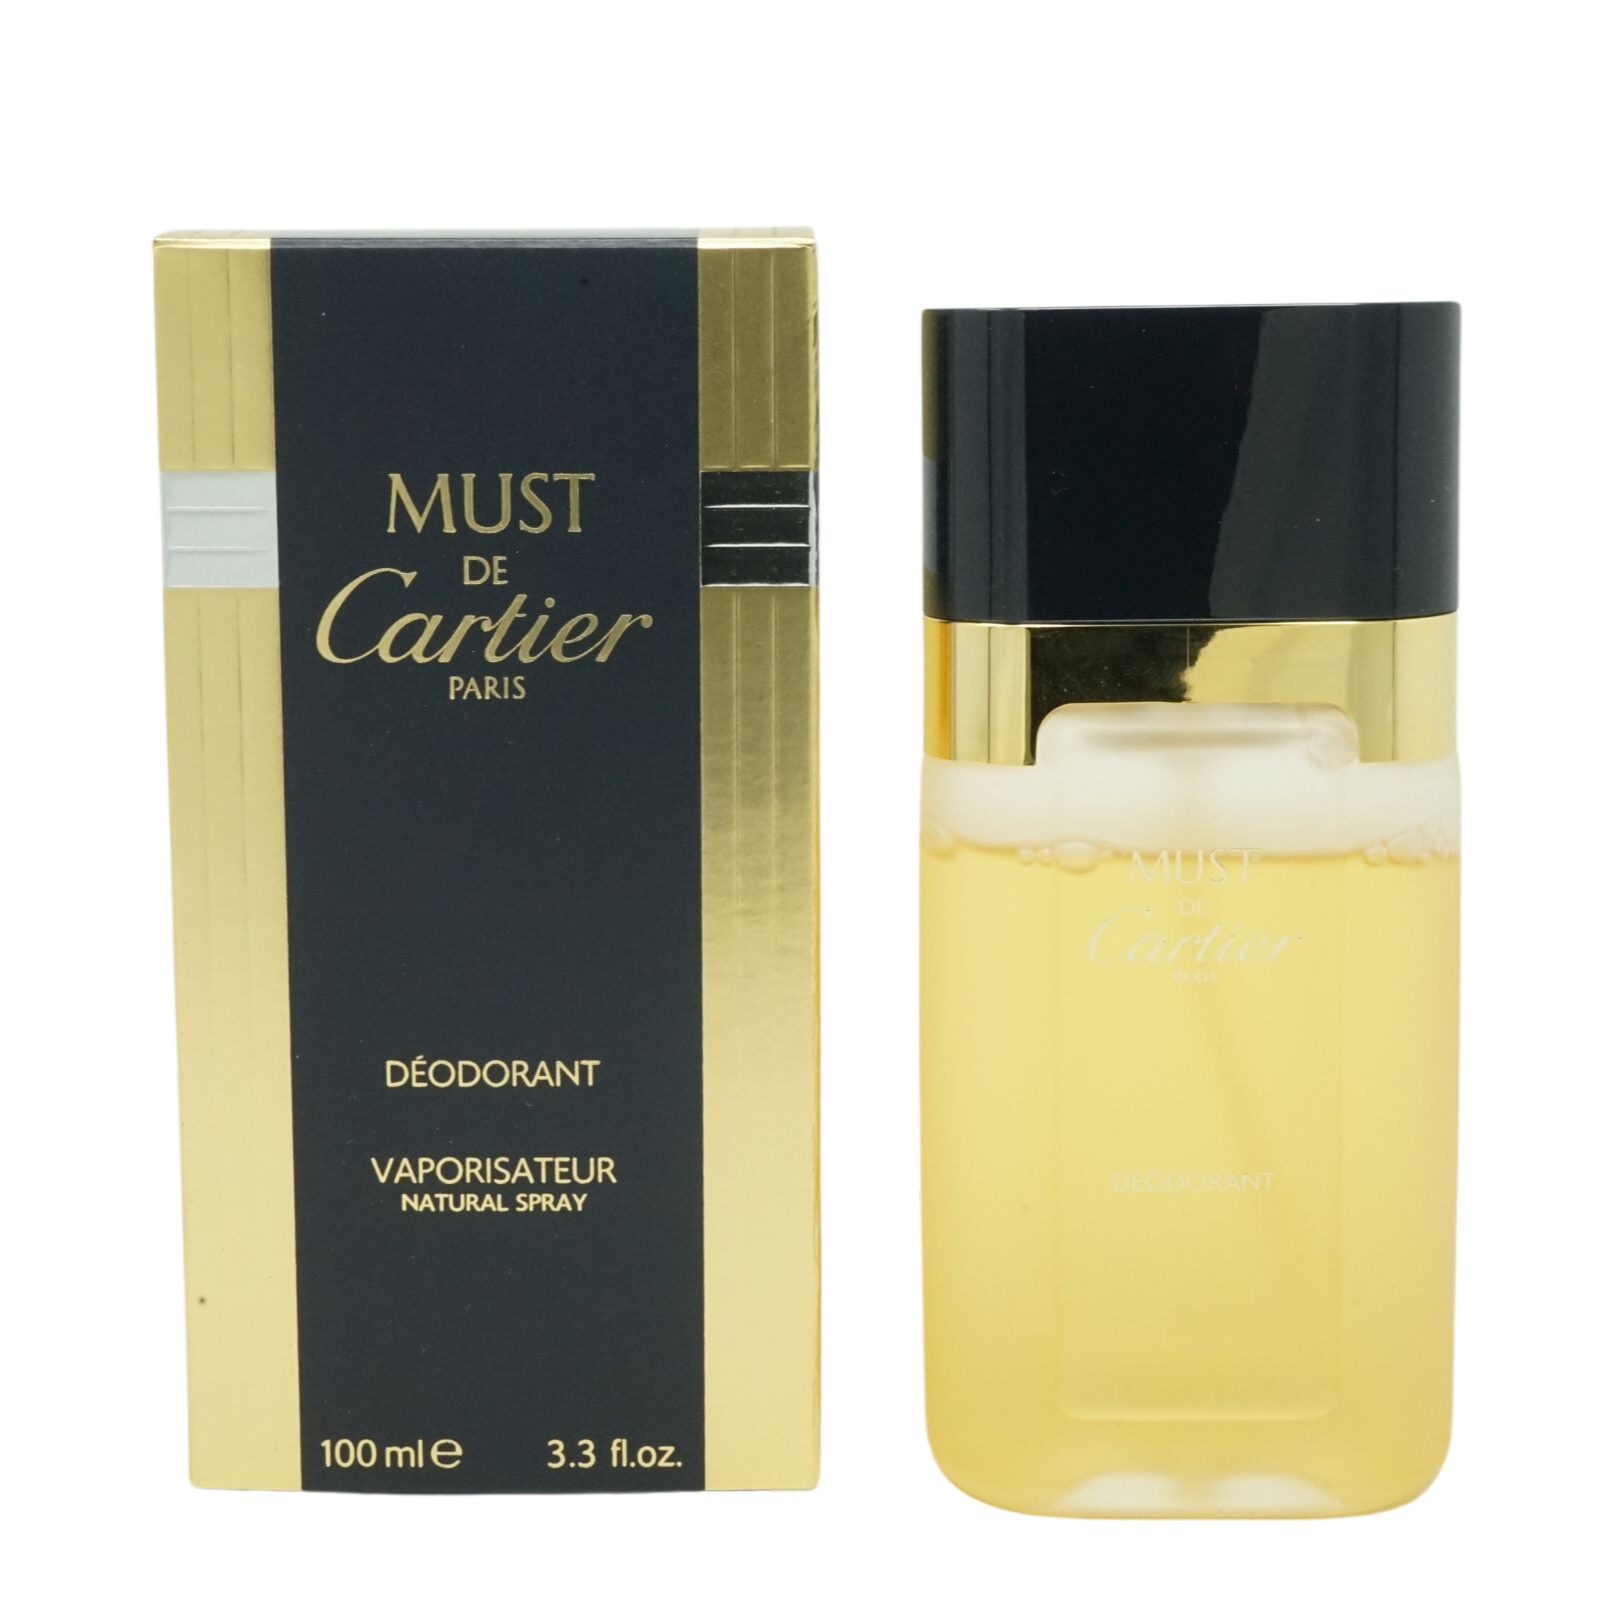 Cartier Körperspray Cartier Must De Cartier Deodorant Natural Spray 100ml | Körpersprays